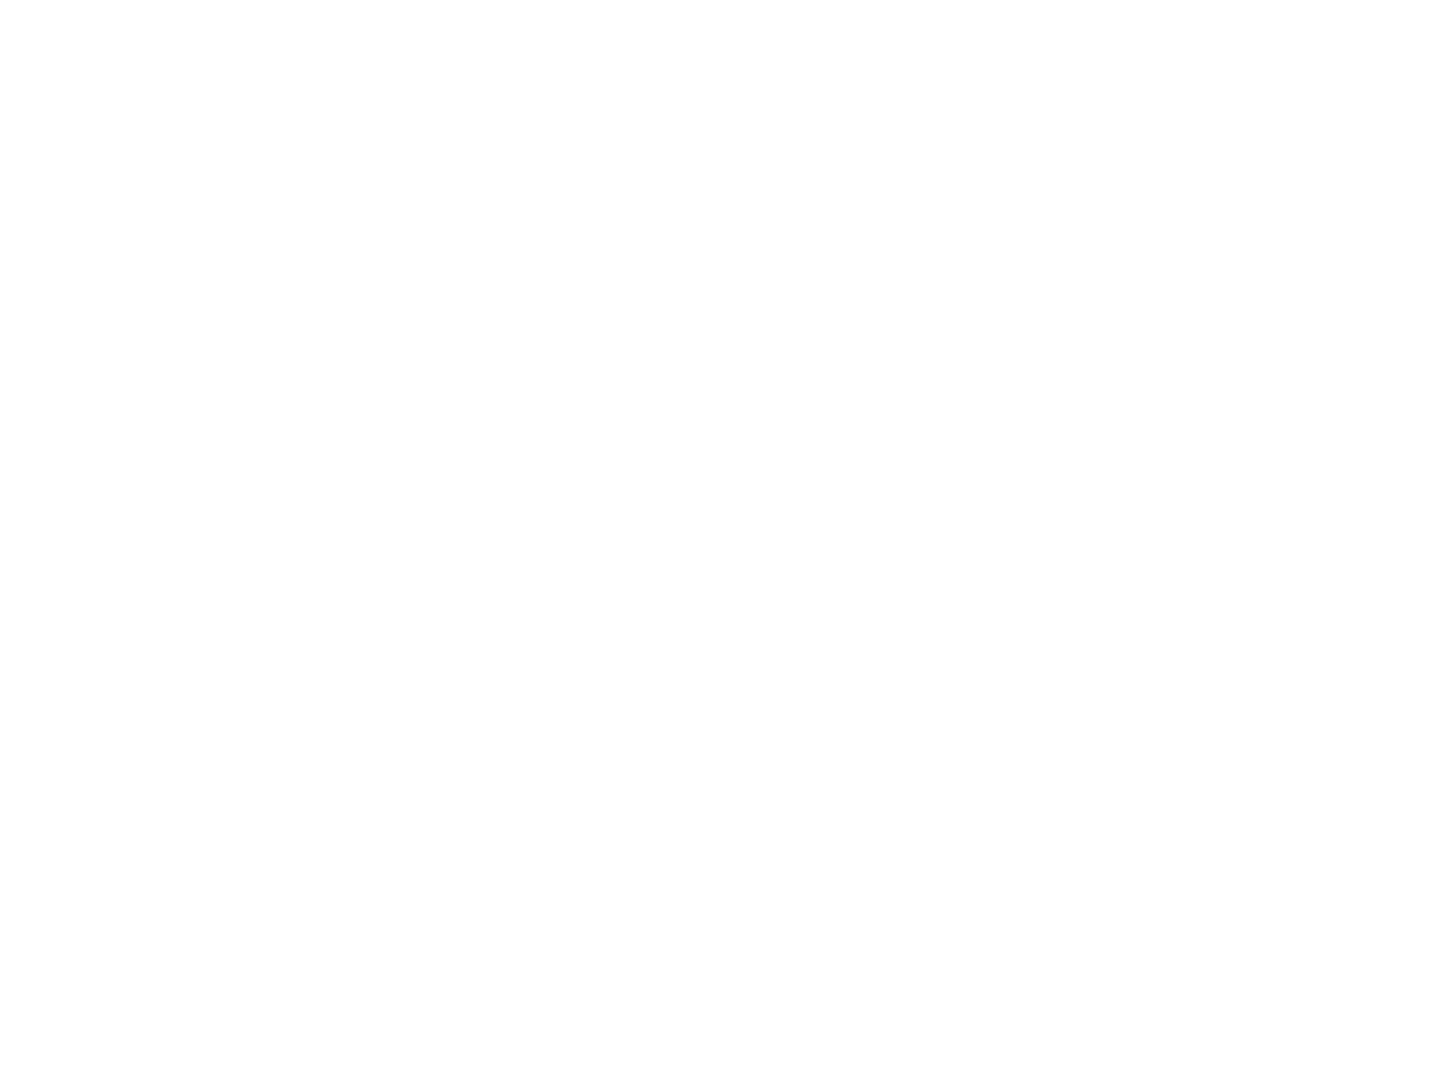 TV Evangelizar